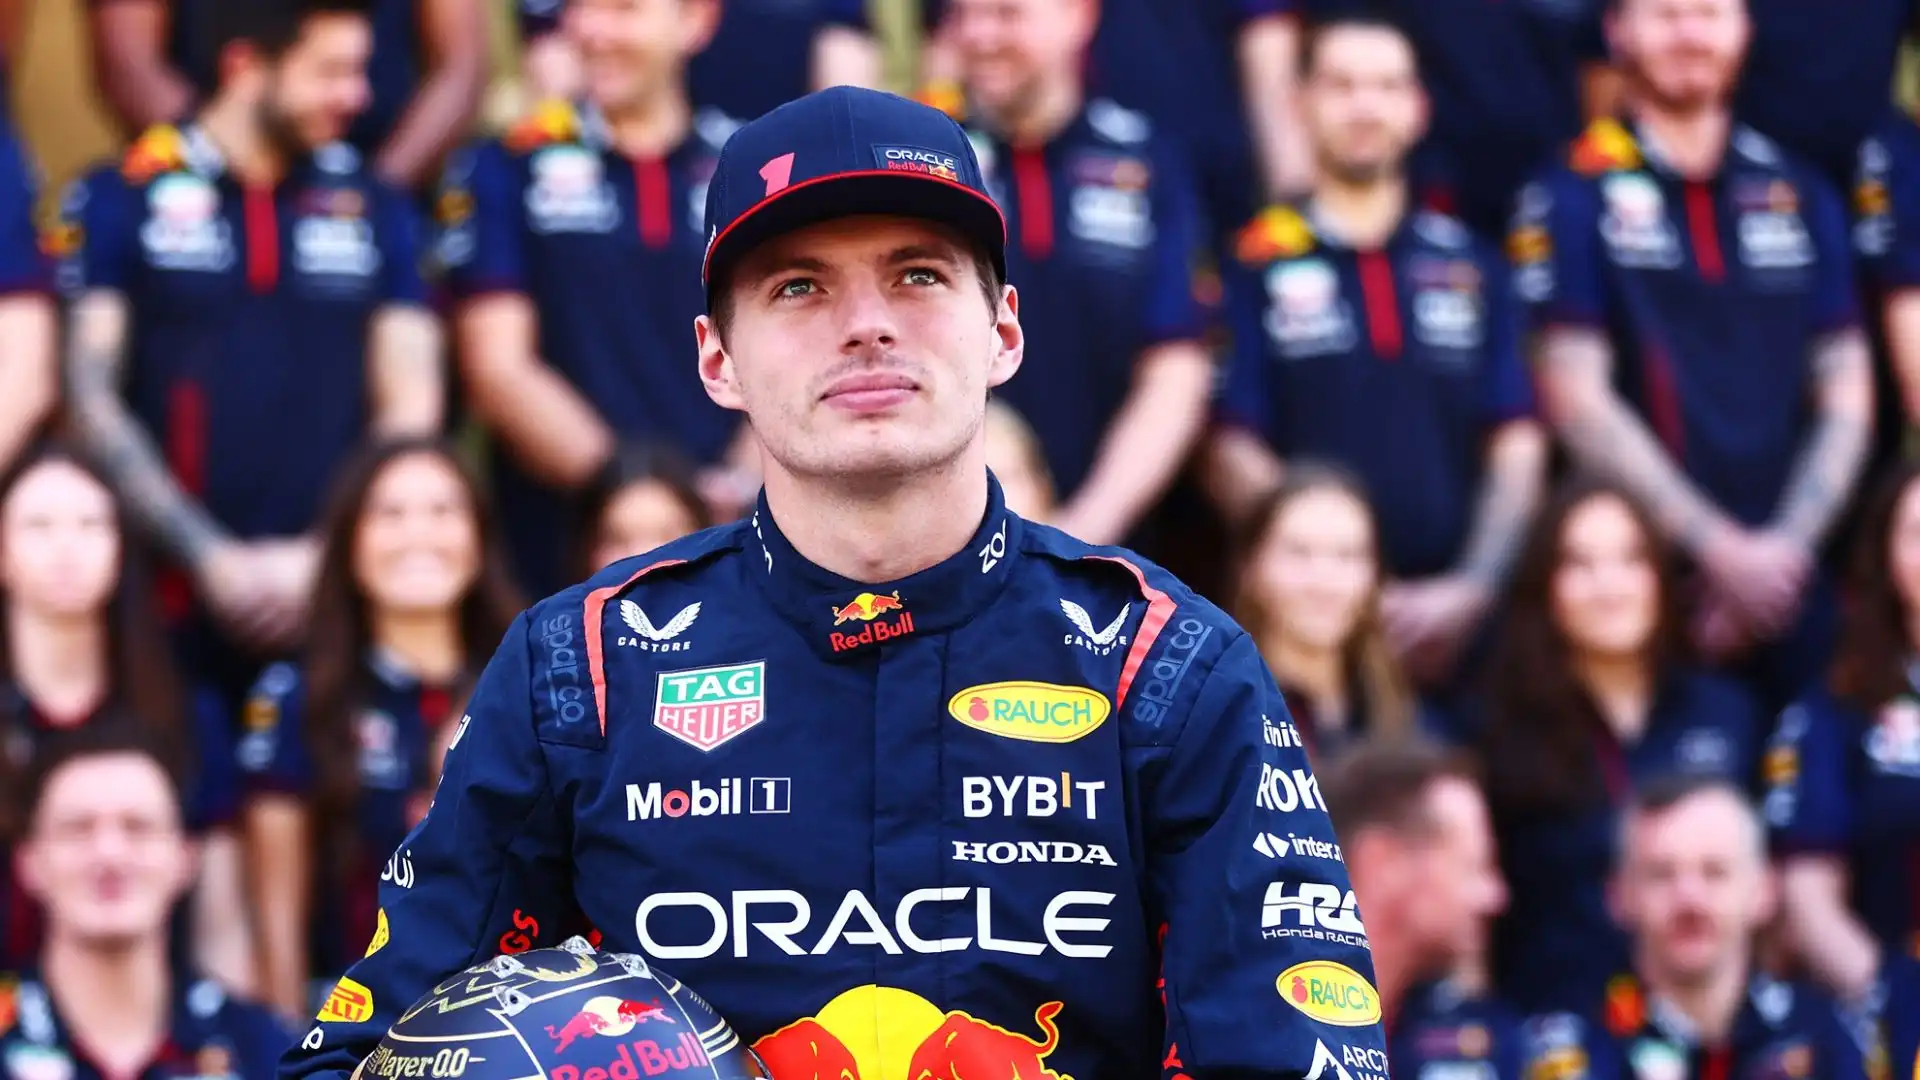 15 Max Verstappen (Formula 1): stipendio $70M; sponsorizzazioni $5M. Totale	$75M